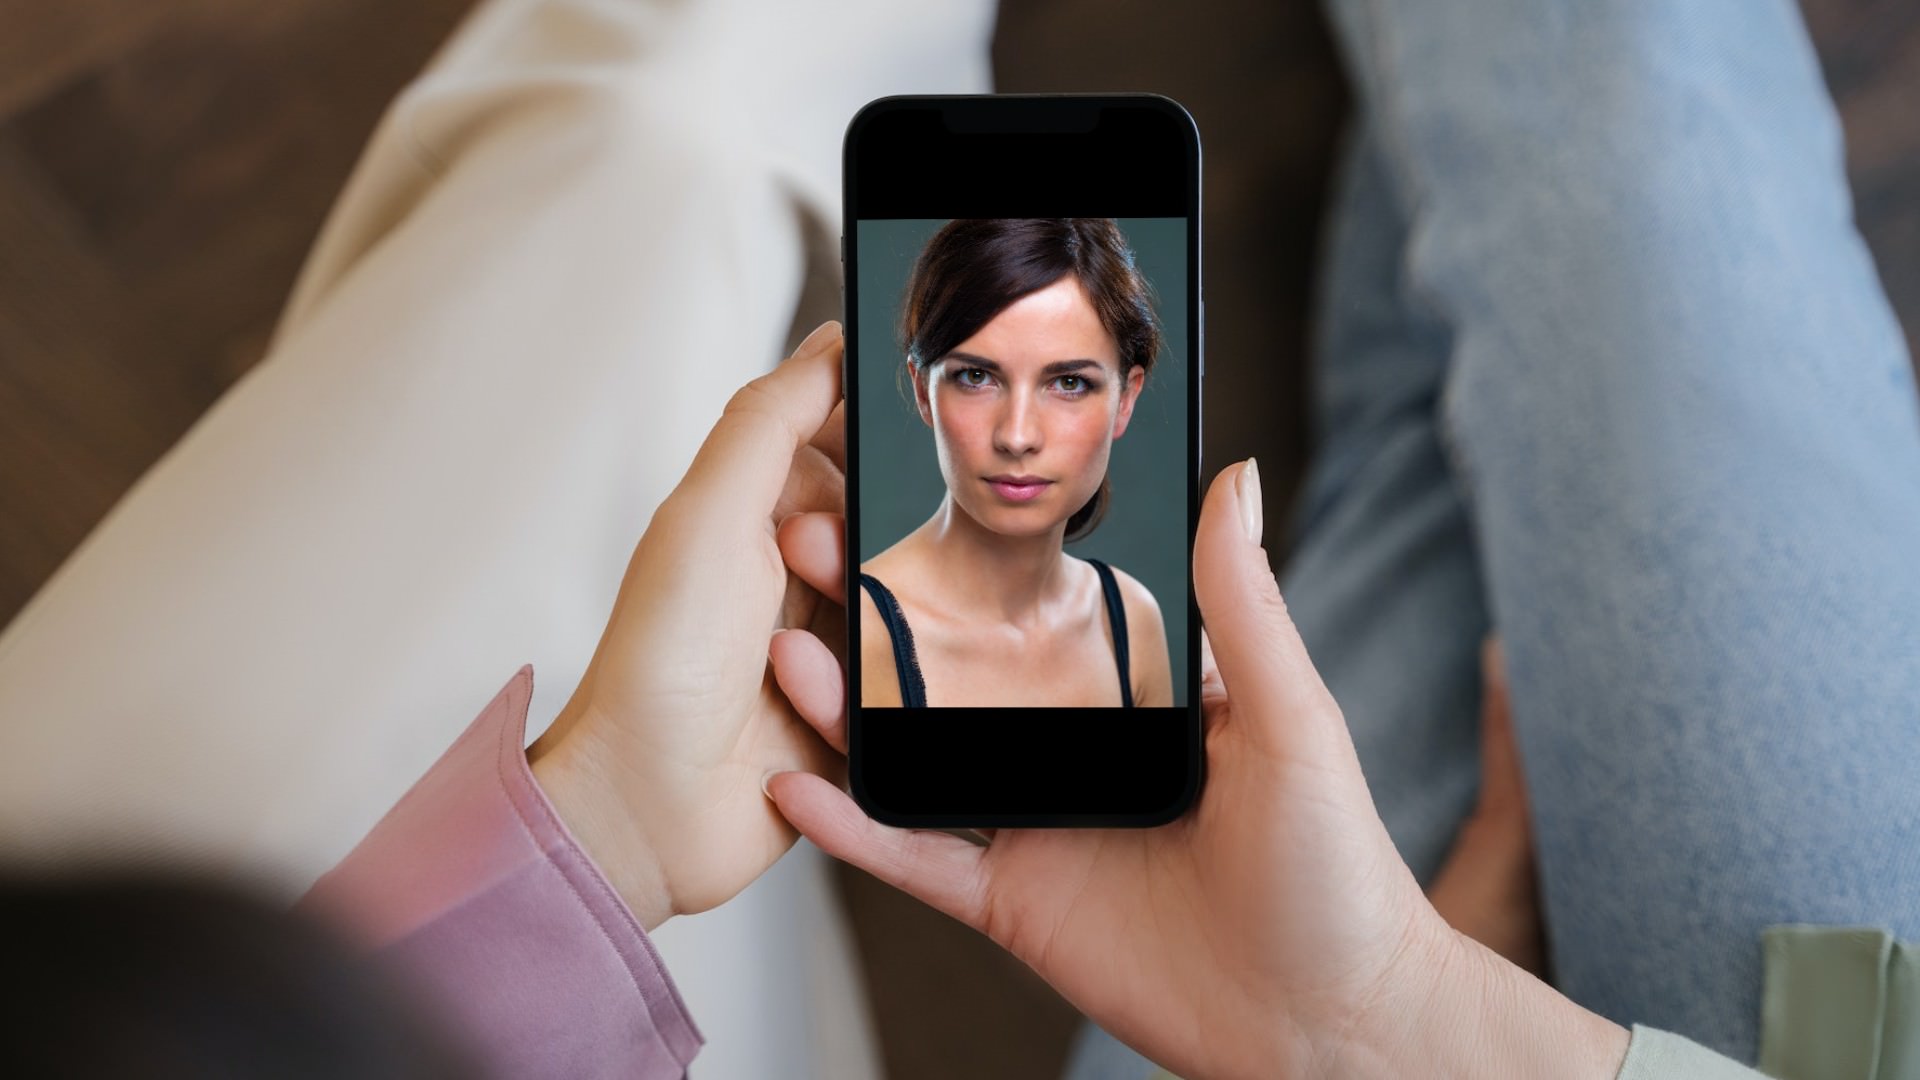 2 Personen betrachten ein Foto einer jungen Frau auf einem Smartphone - Beitragsbild zum Artikel Bildrecht und Urheberrecht